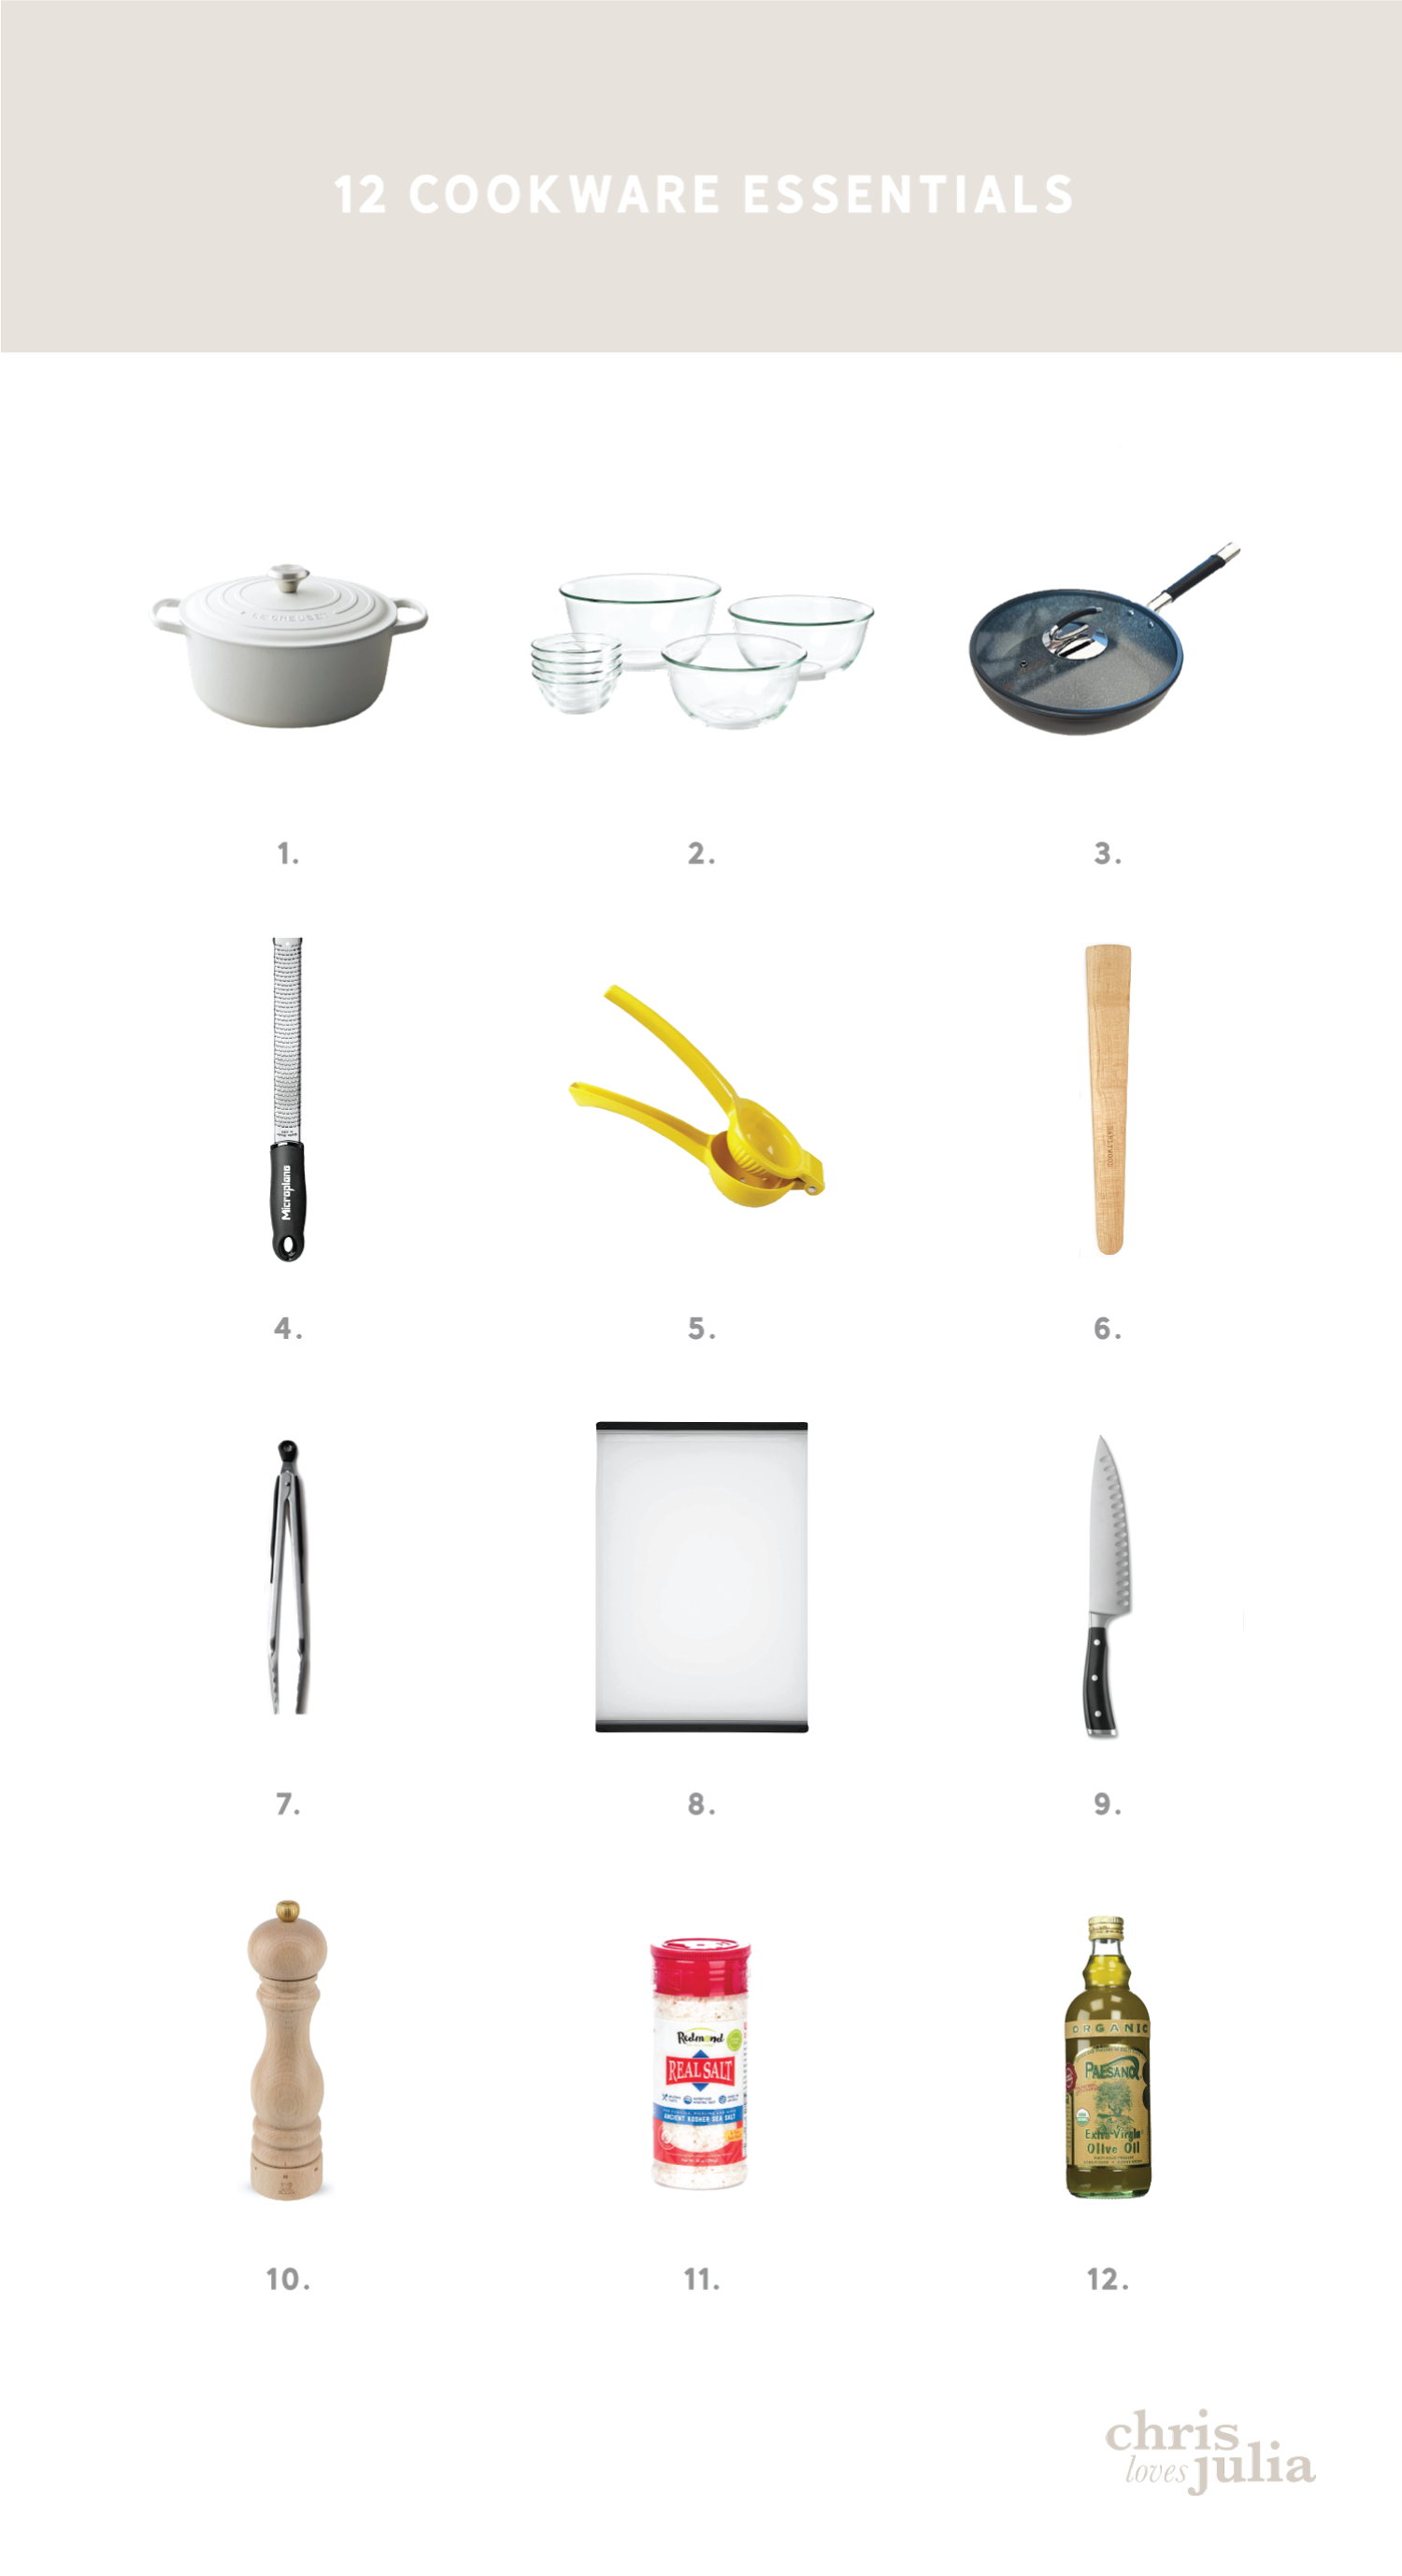 https://www.chrislovesjulia.com/wp-content/uploads/2020/04/12-cookware-essentials-1.png